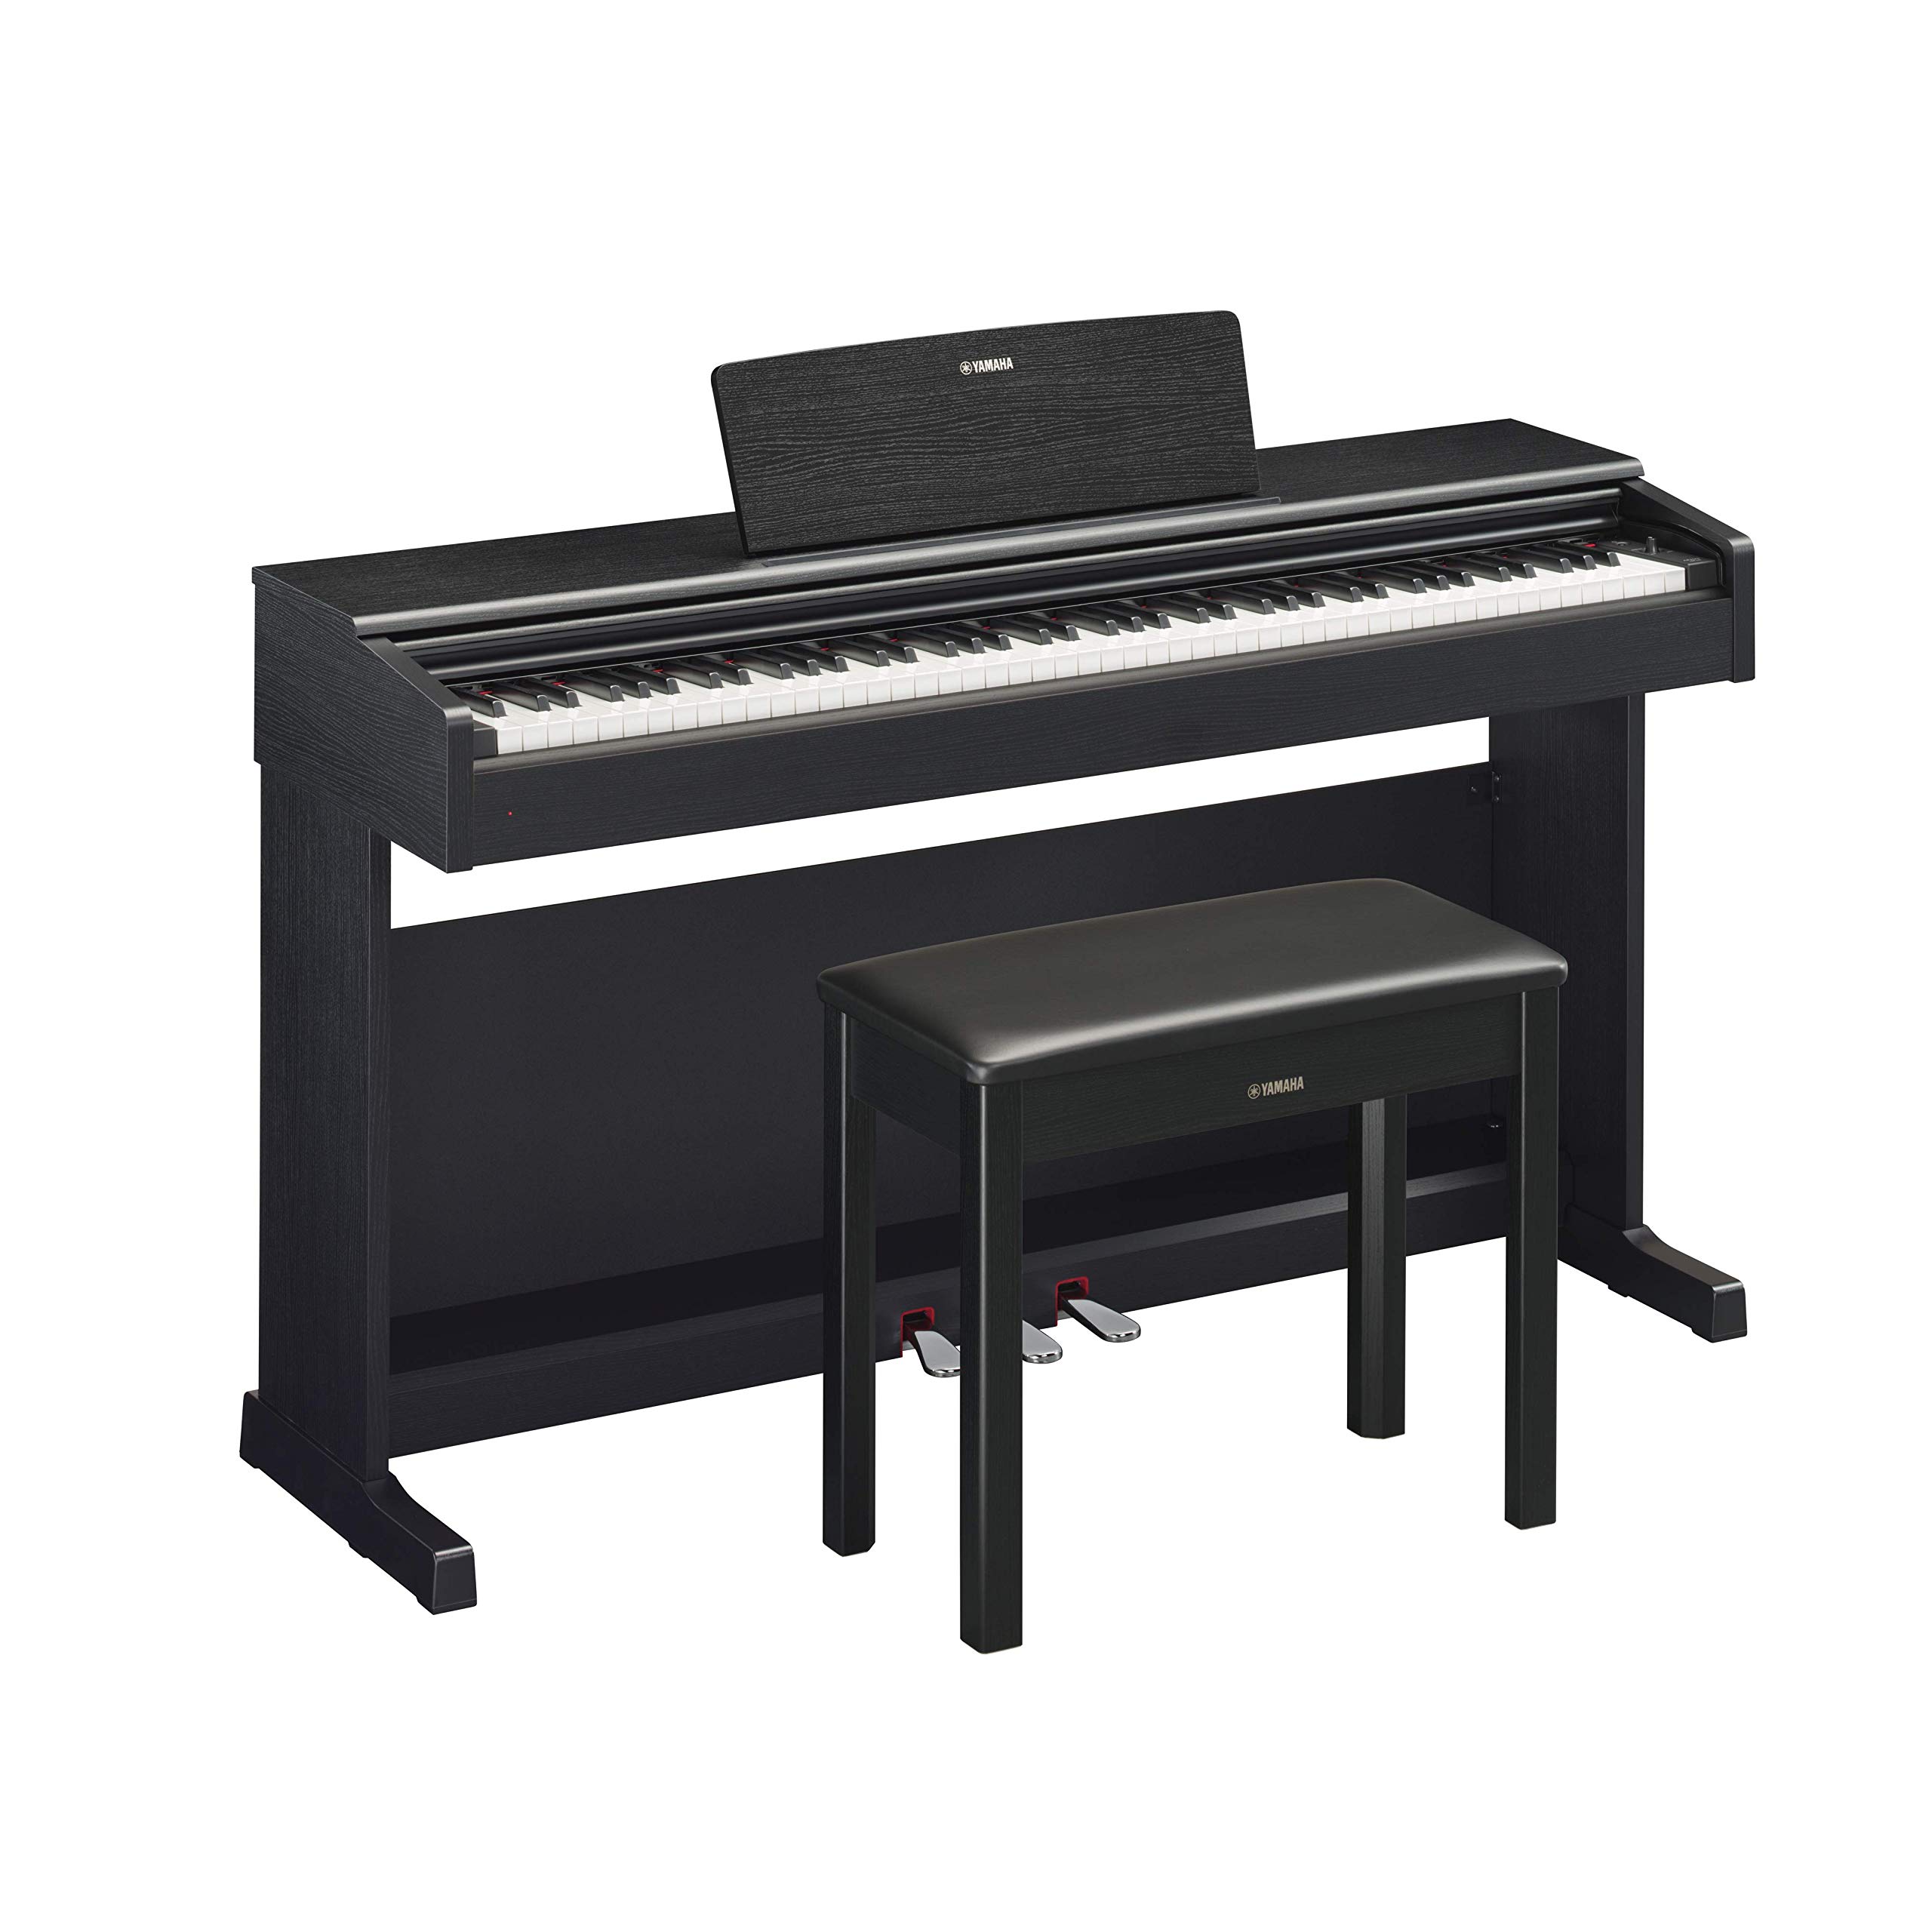 YAMAHA YDP144B Arius 系列数字控制台钢琴带凳，黑色